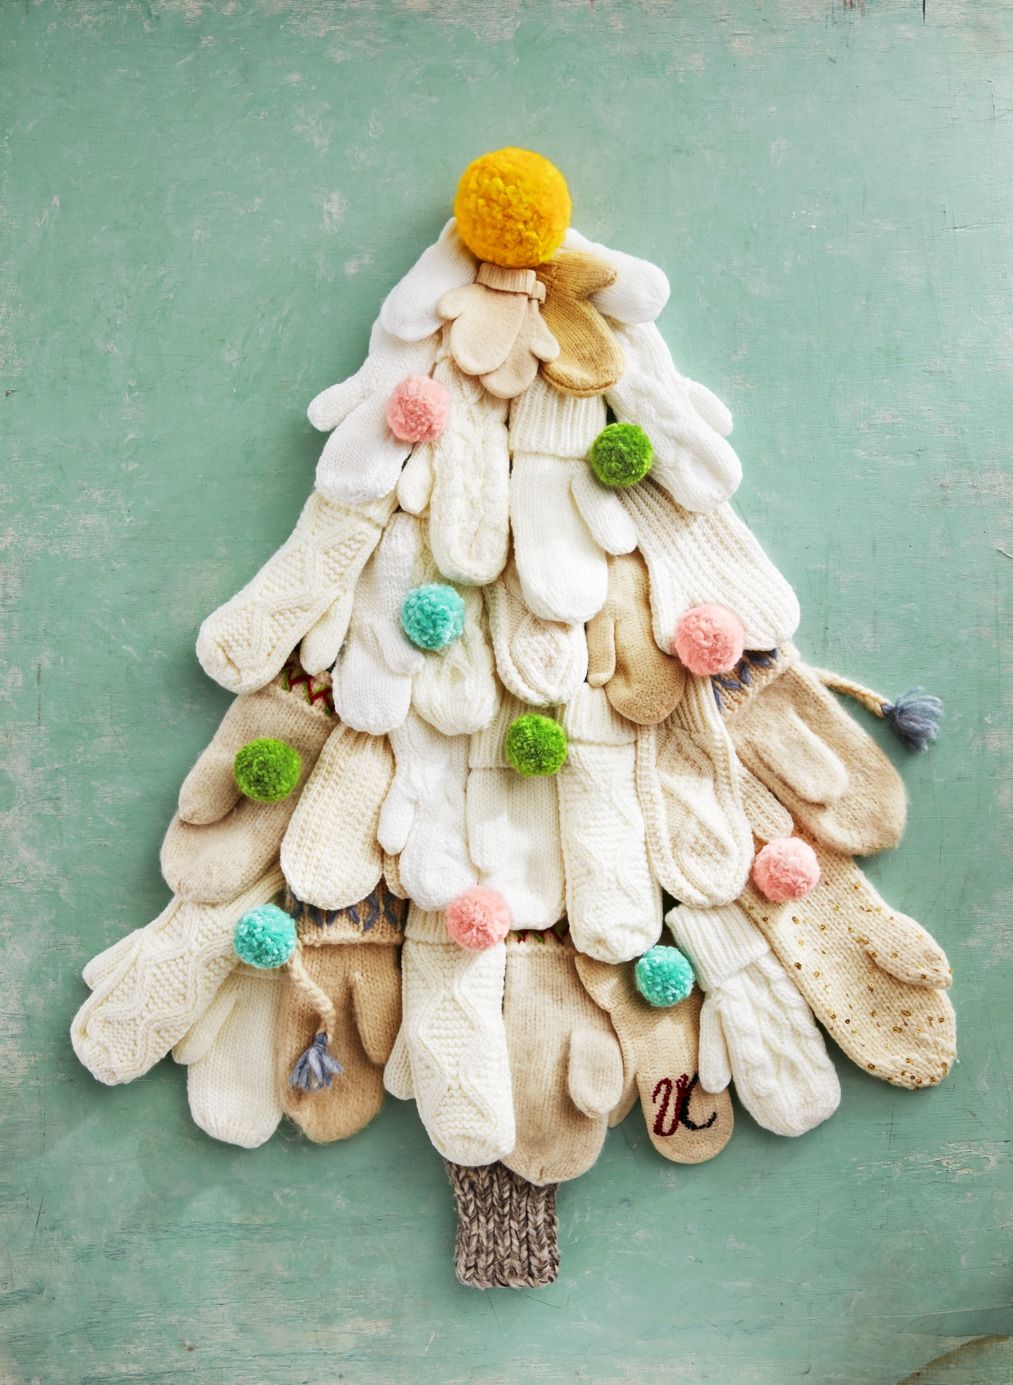 82 DIY Christmas Decorations - Homemade Christmas Decor Ideas